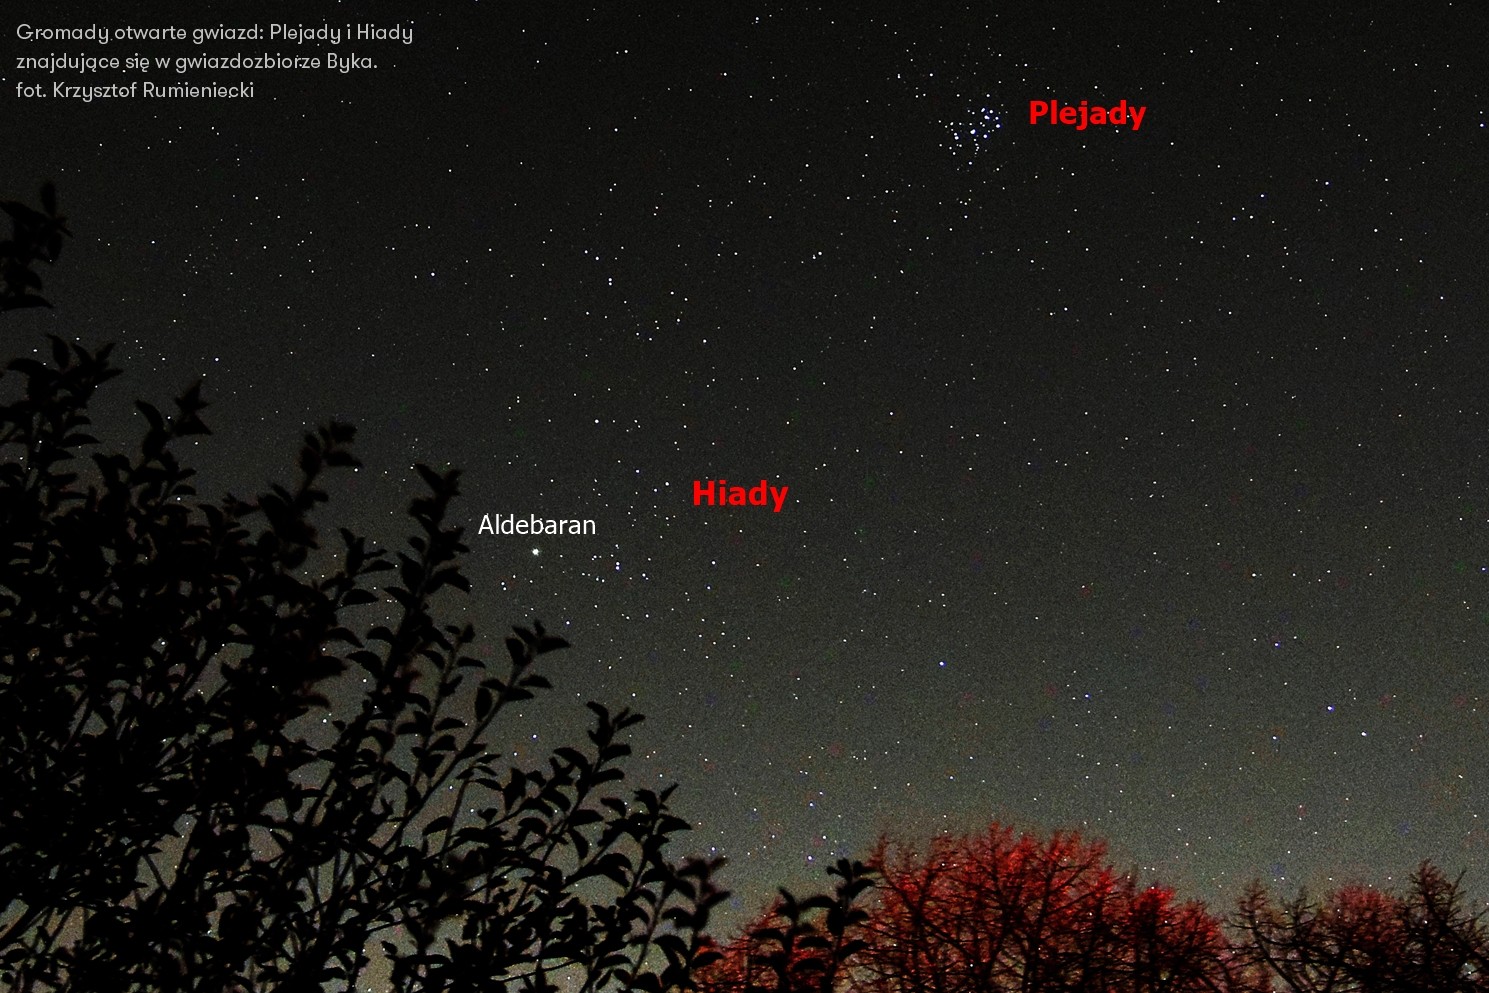 Gromady otwarte gwiazd: Plejady i Hiady znajdujące się w gwiazdozbiorze Byka.